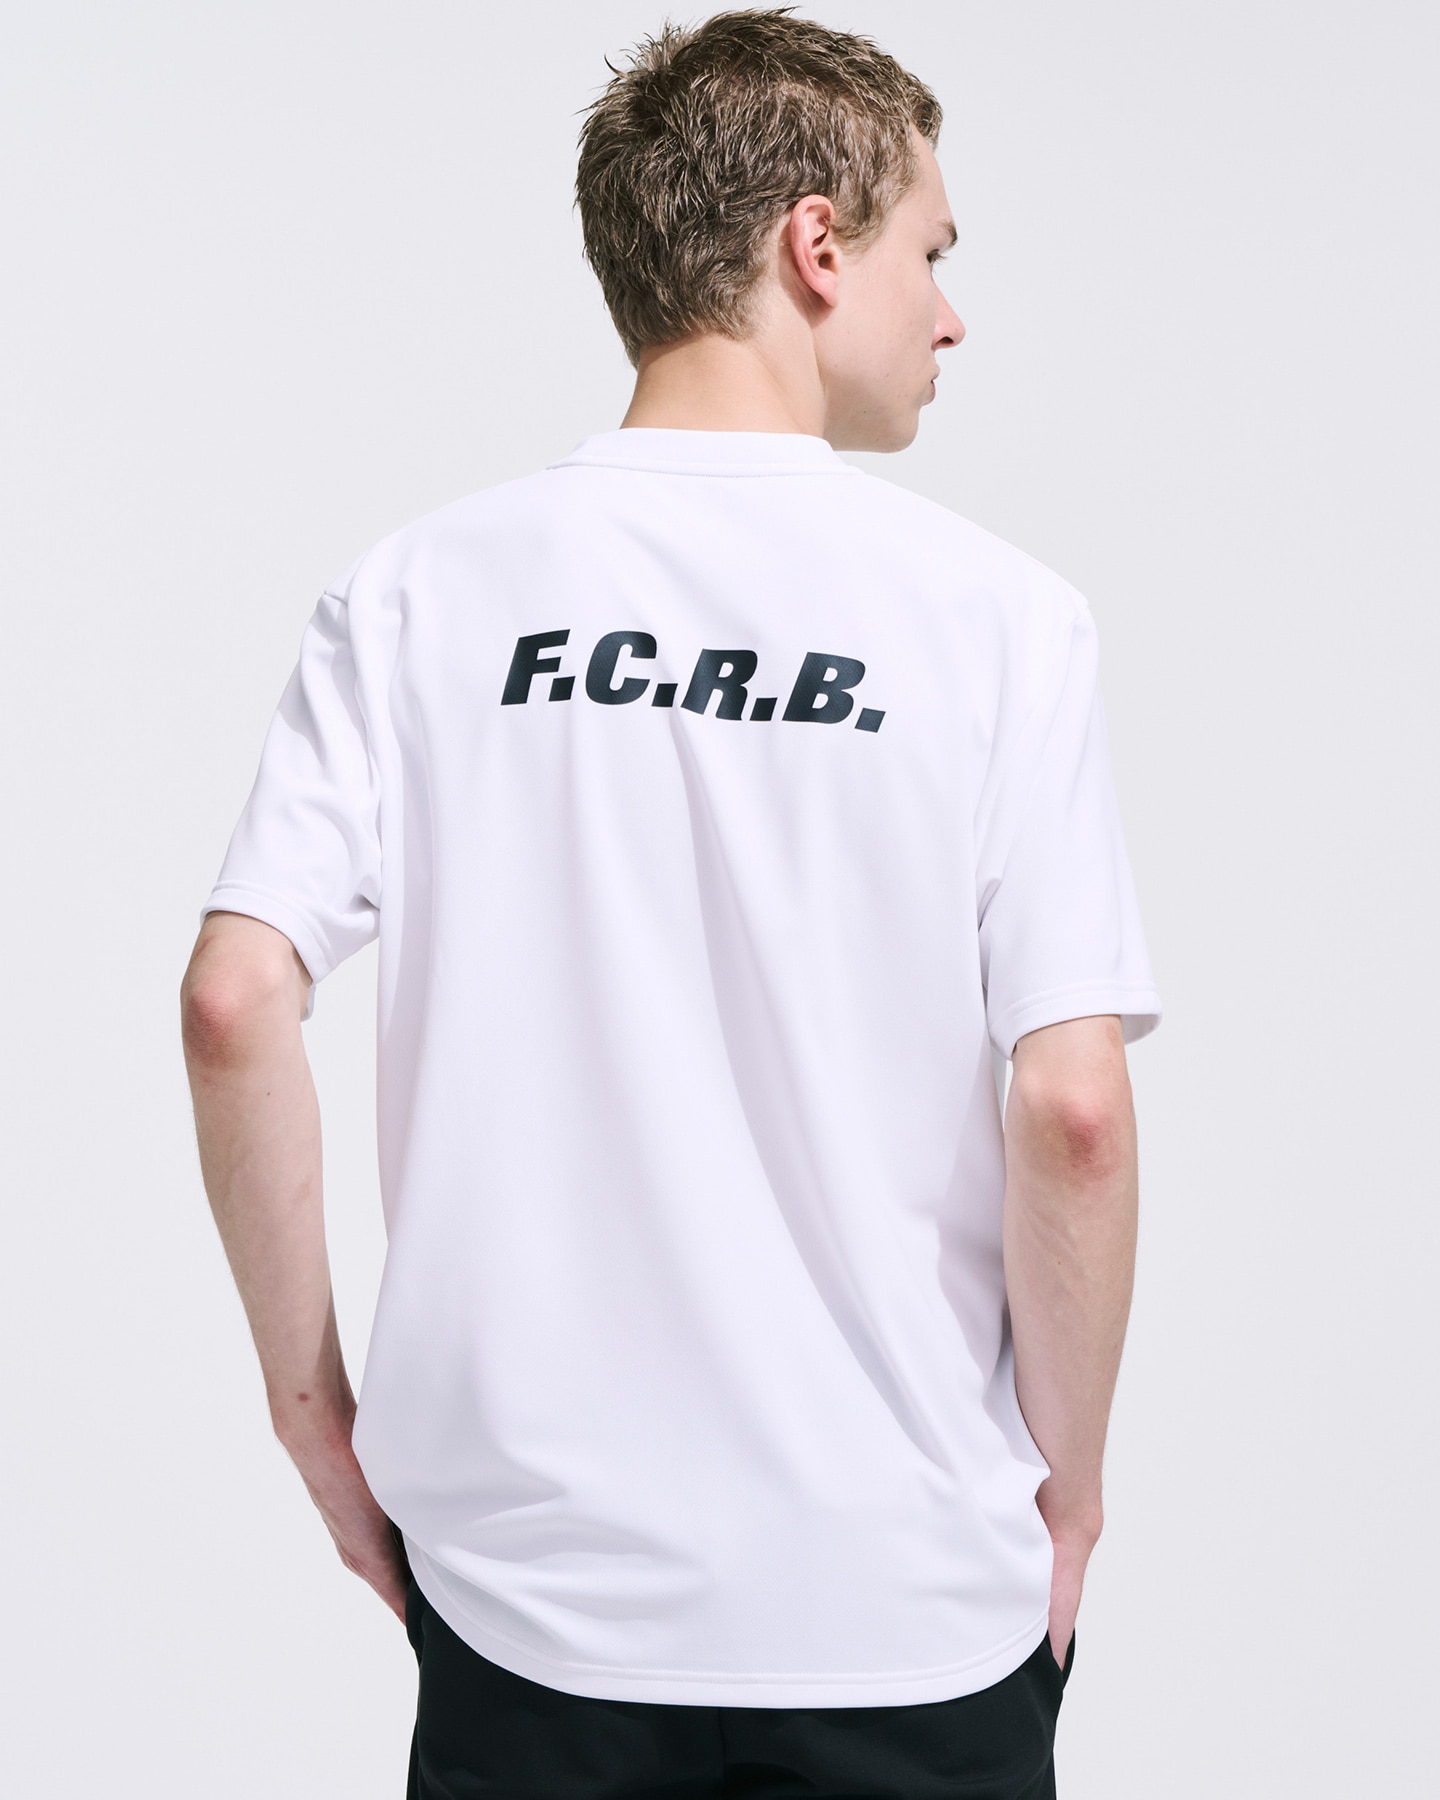 FCRB PRE MATCH TOP Tシャツ Mサイズお値下げ不可